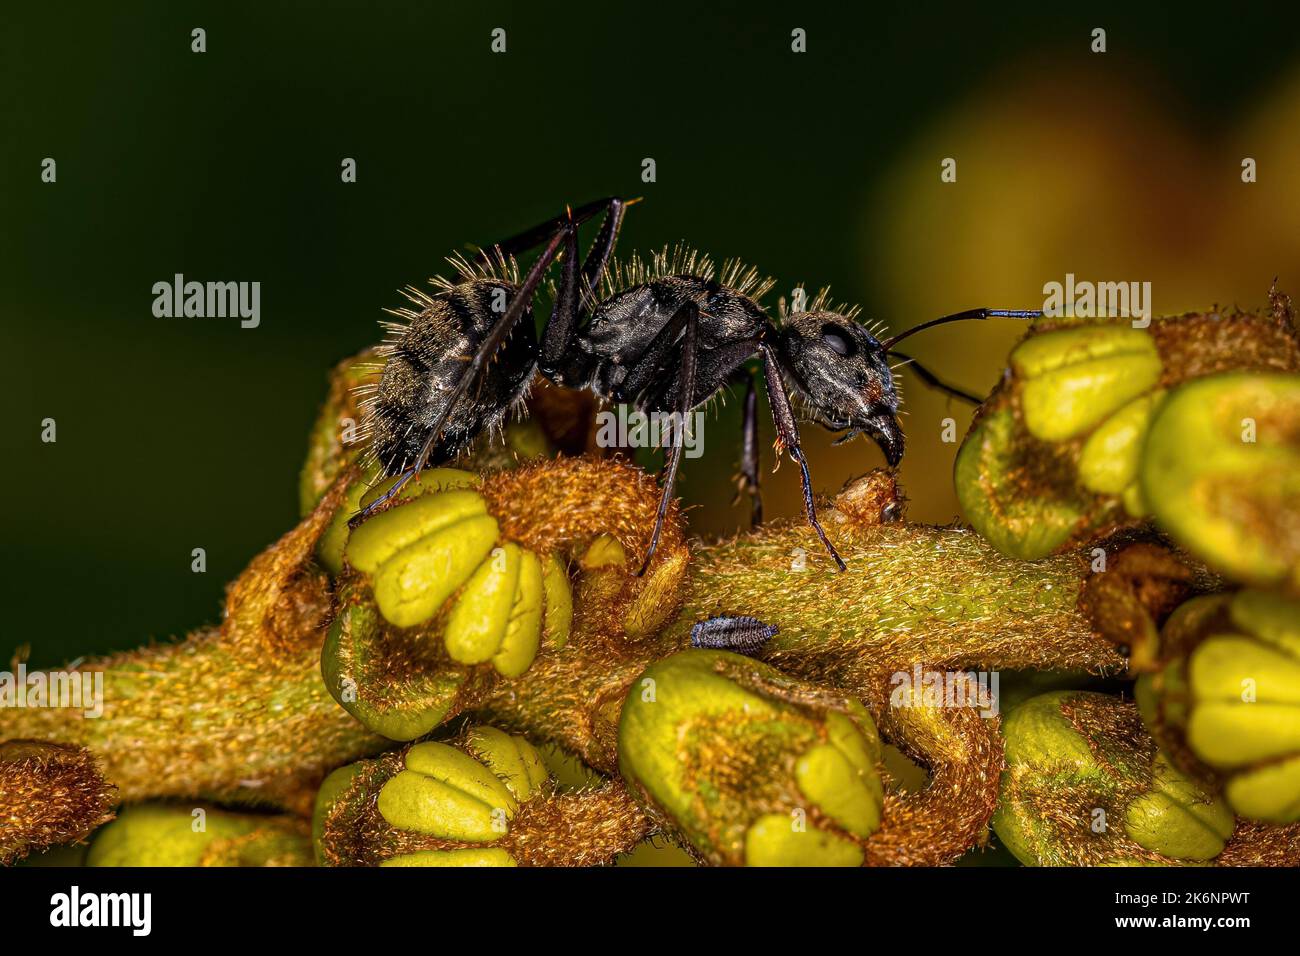 Adult Female Carpenter Ant of the genus Camponotus Stock Photo